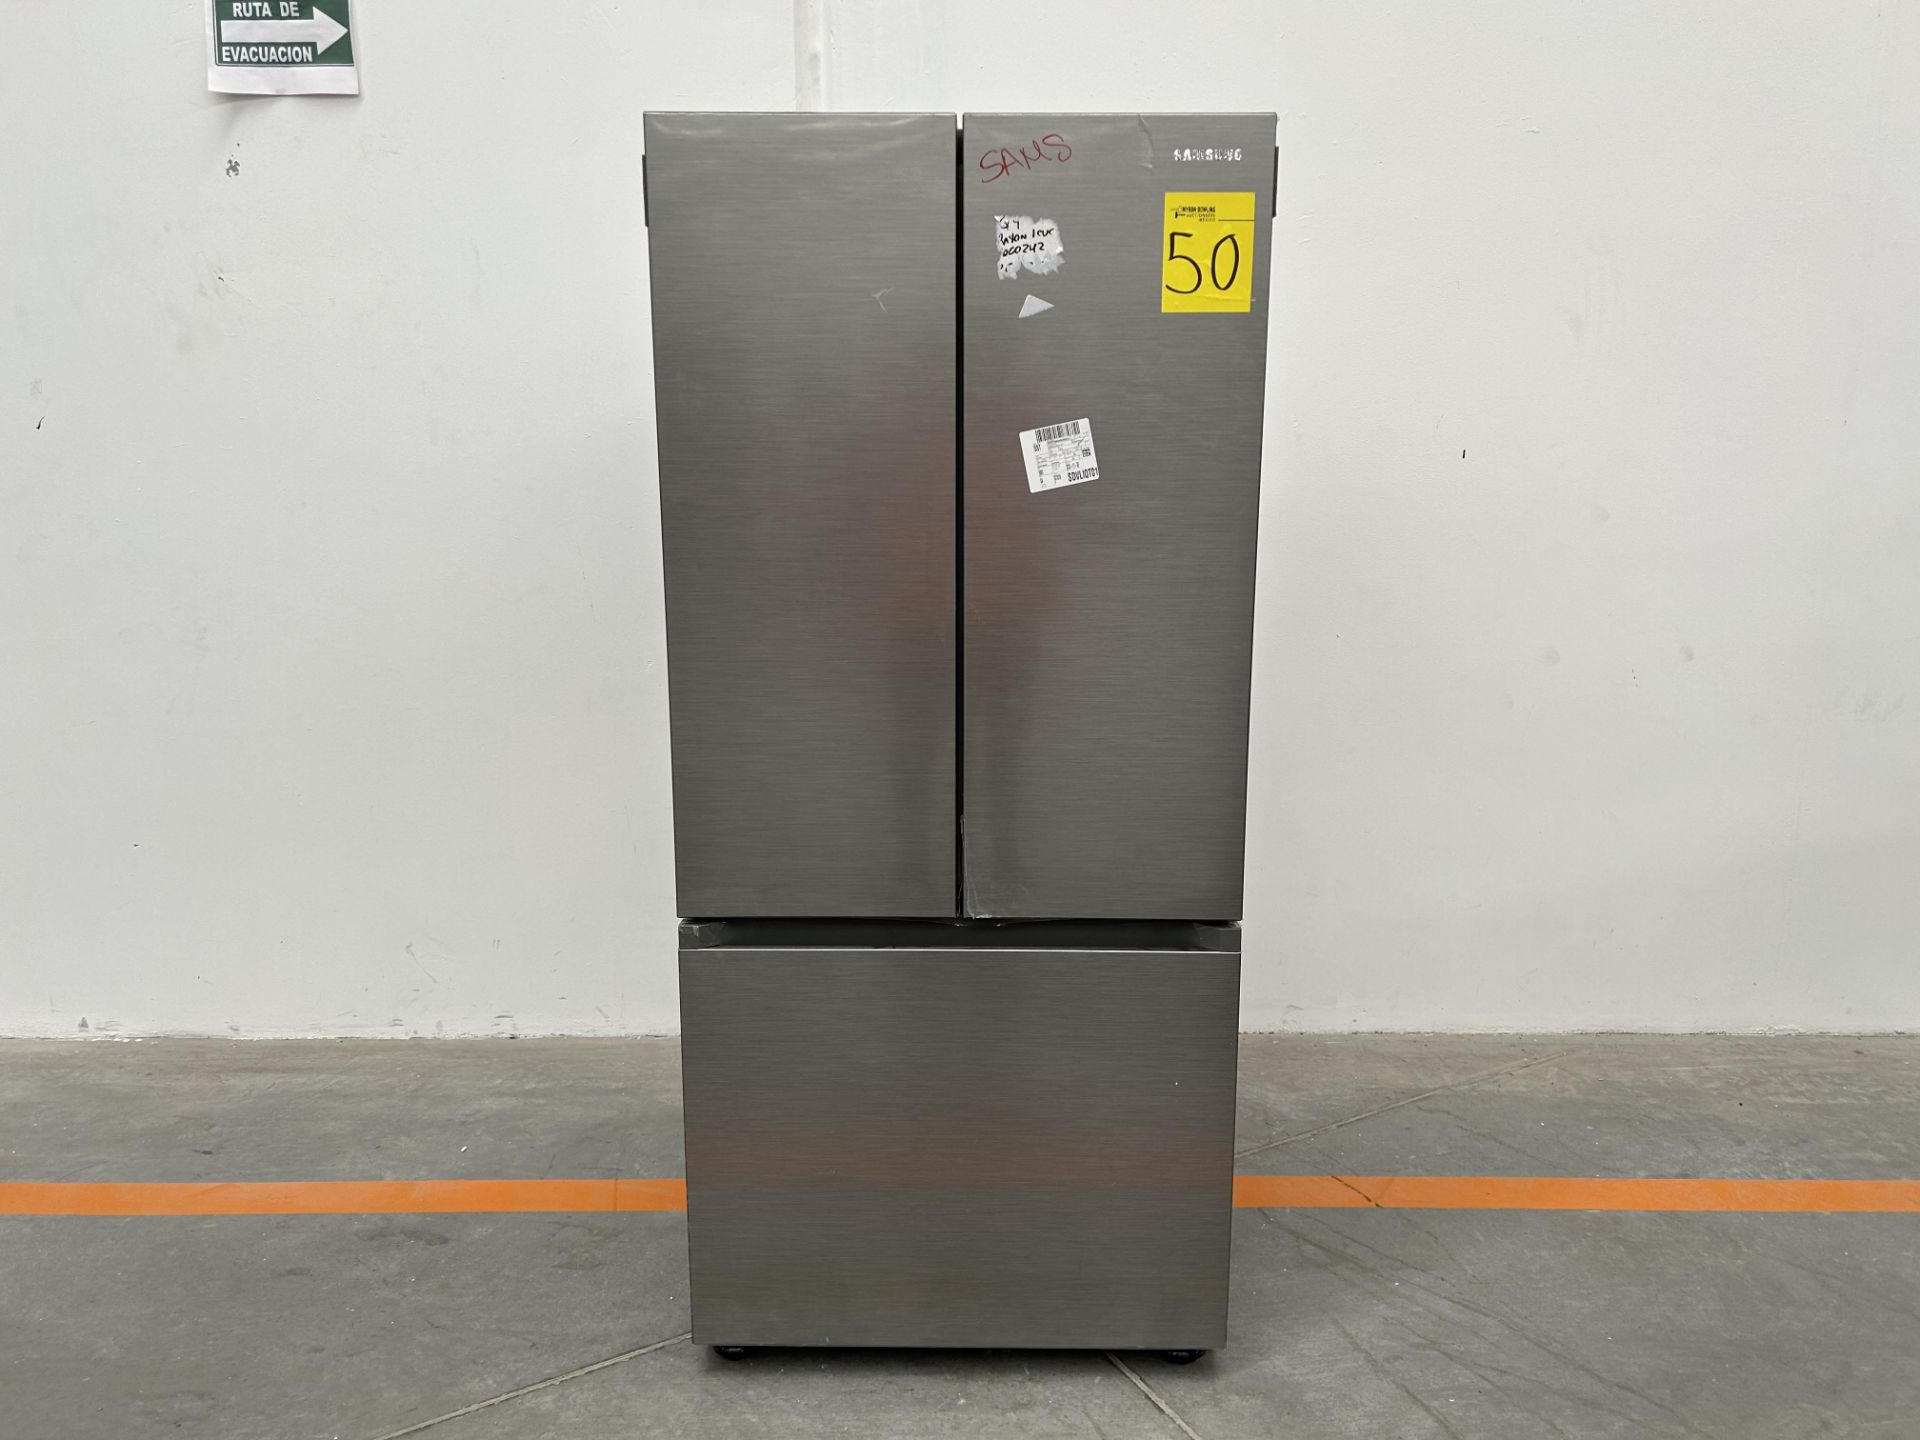 (NUEVO) Refrigerador Marca SAMSUNG, Modelo RF22A410S9, Serie 01875P, Color GRIS